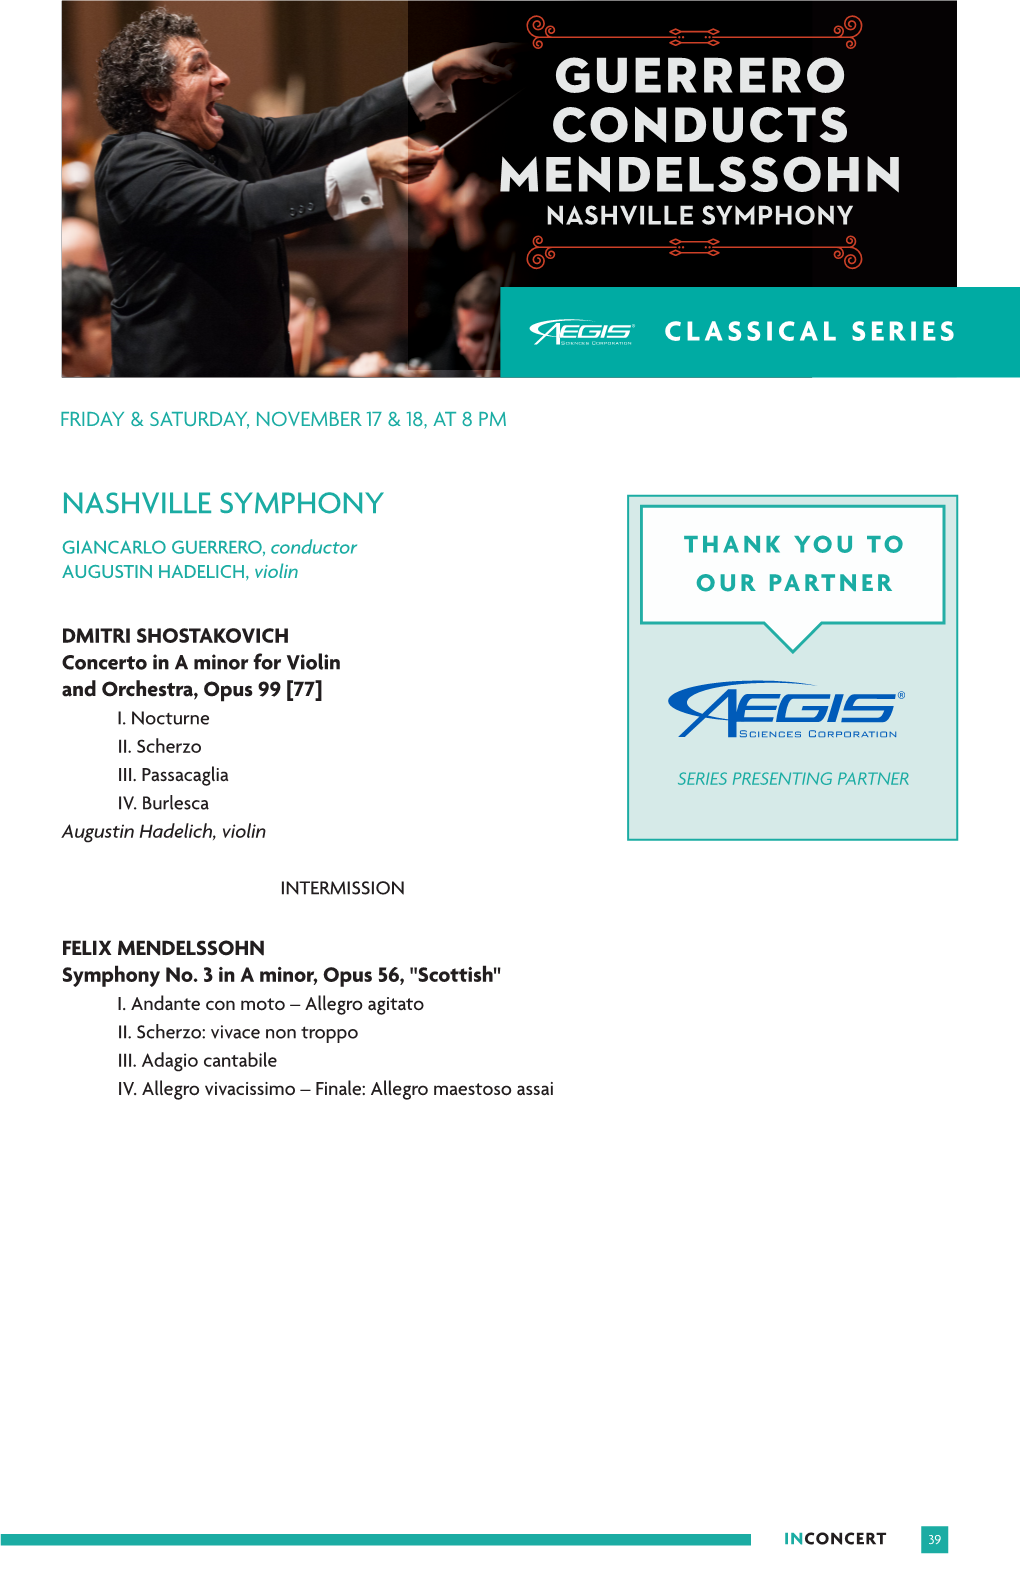 Guerrero Conducts Mendelssohn Nashville Symphony